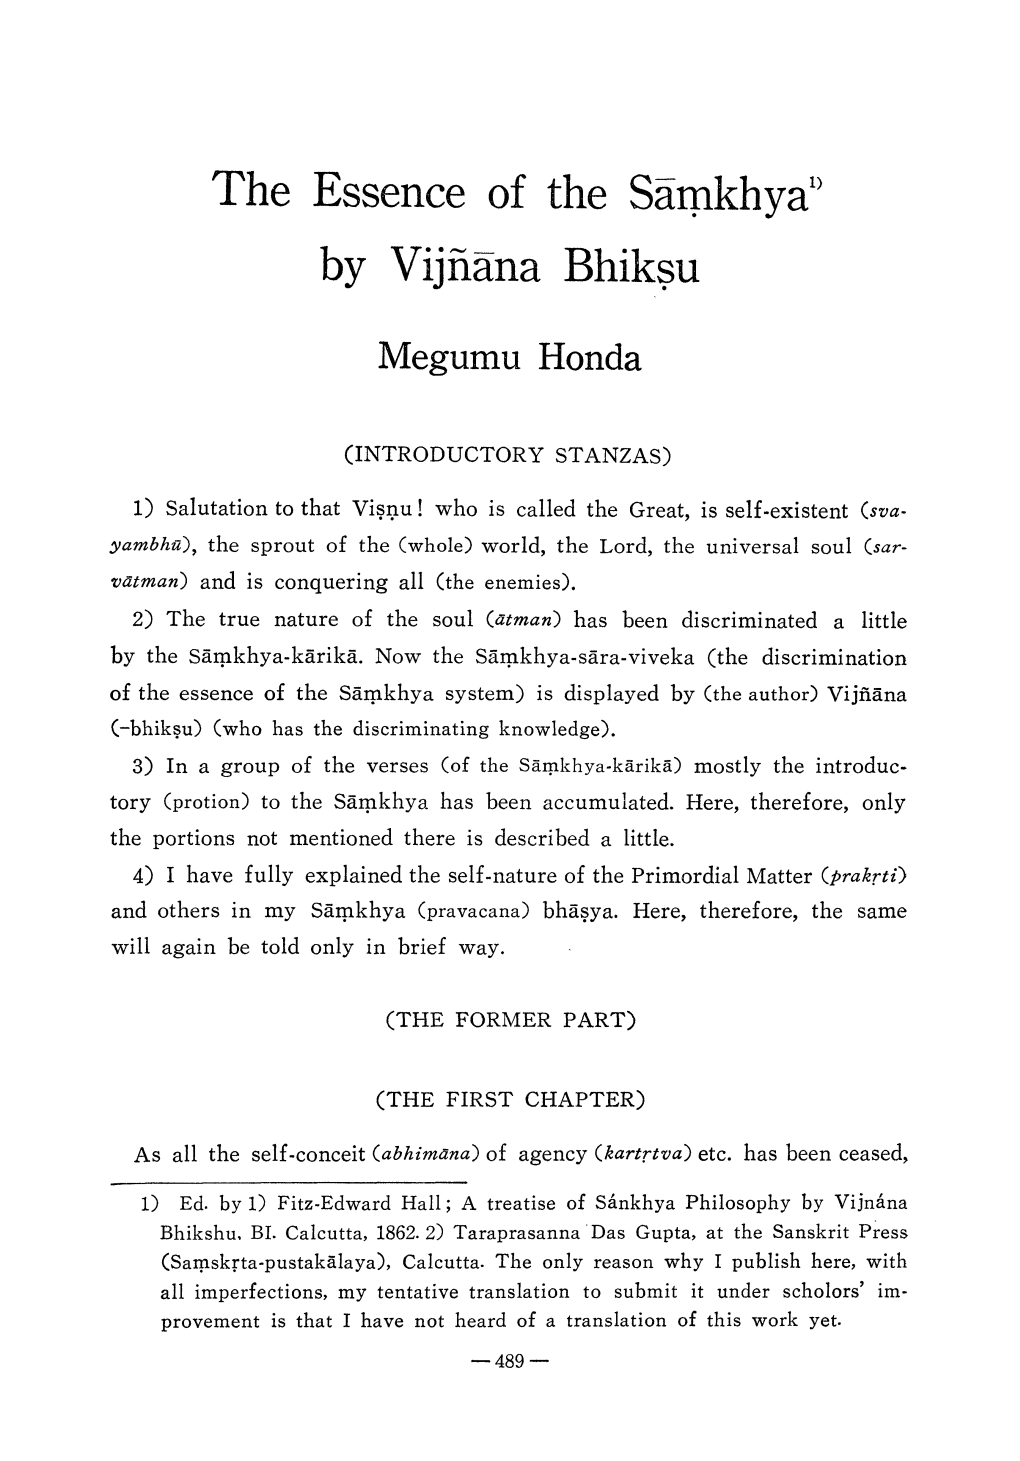 The Essence of the Sipkhya by Vijnana Bhiksu